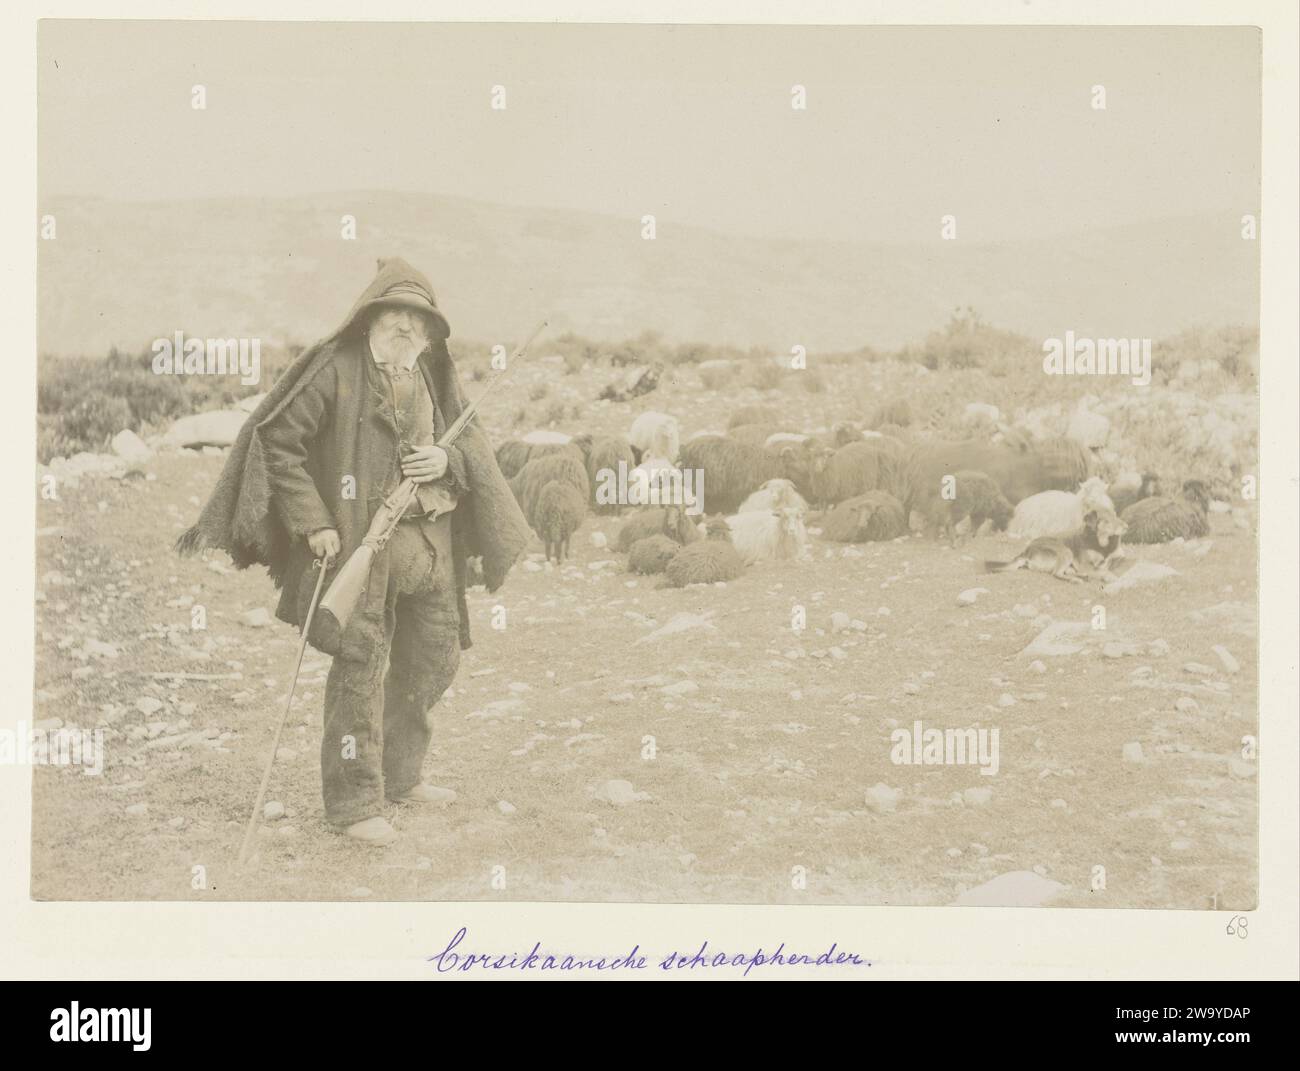 Korsische Schafhirte, ca. 1886 - ca. 1896 fotografieren Sie Einen Schafhirten mit einer Pistole mit einer großen Schafherde in der bergigen korsischen Landschaft. Fotografische Unterstützung von Korsika. Karton Albumendruck Korsika Stockfoto